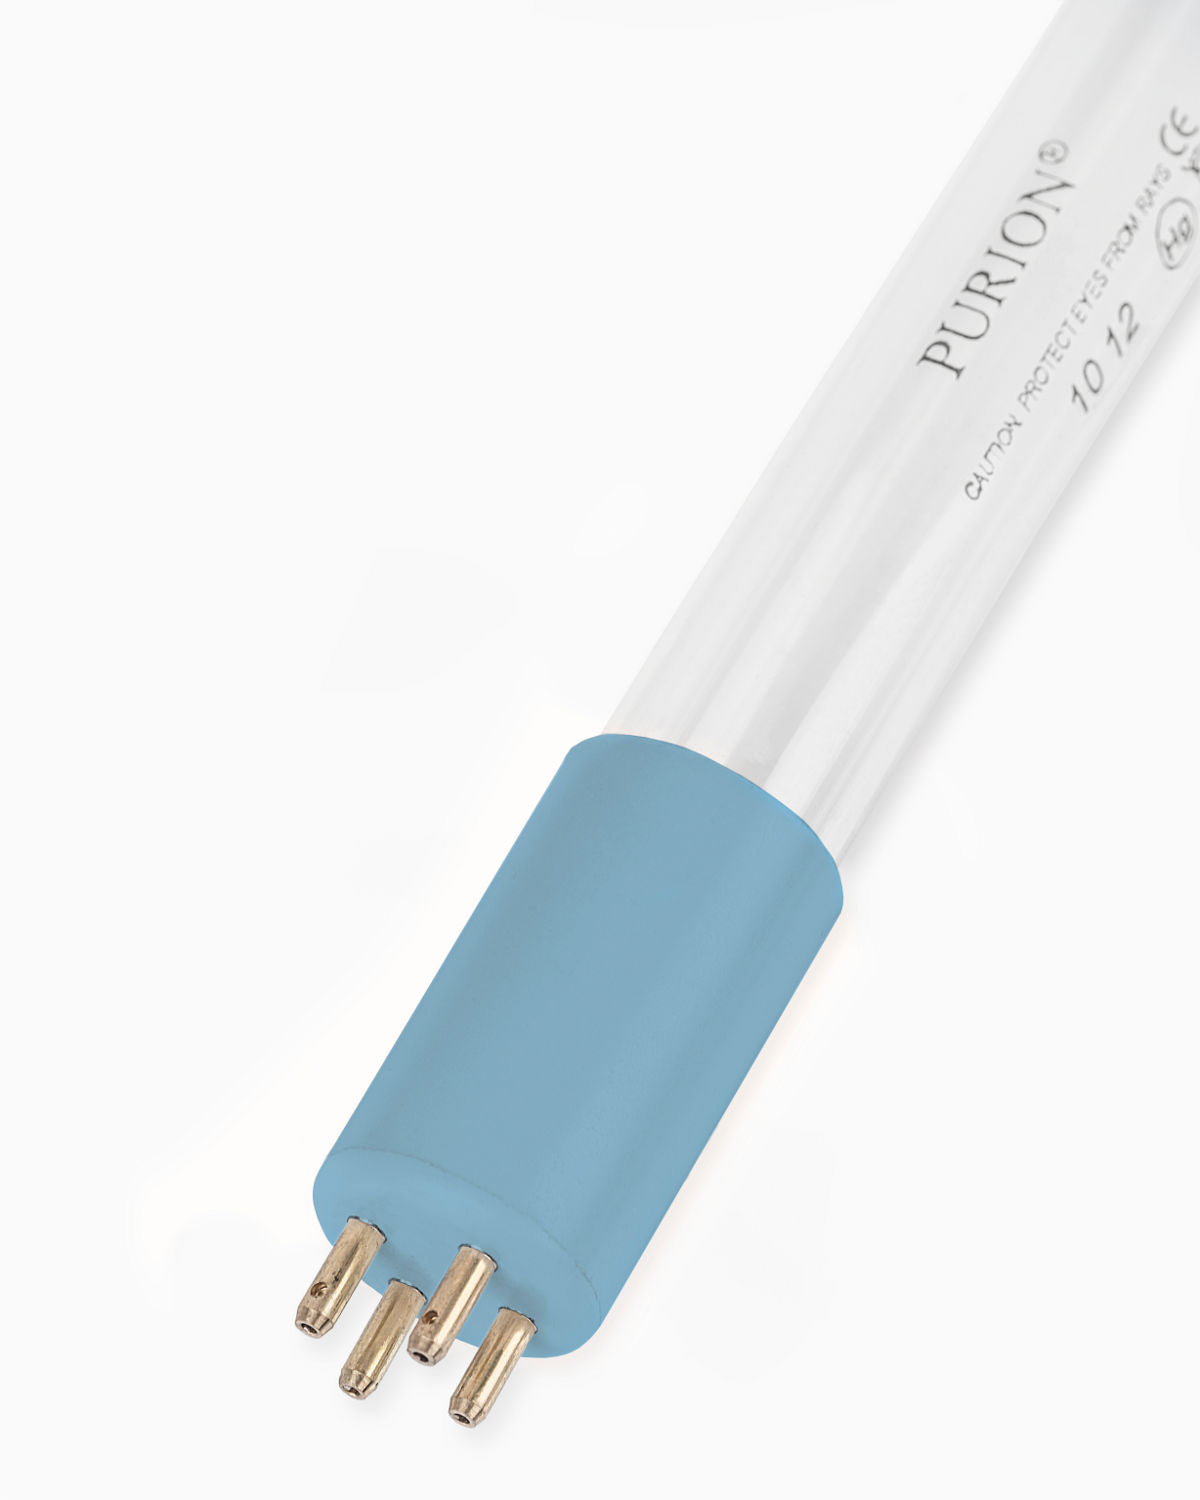 Eine PURION 1000 H ESM Blaulichtröhre mit UV-C-Desinfektion auf weißem Hintergrund.